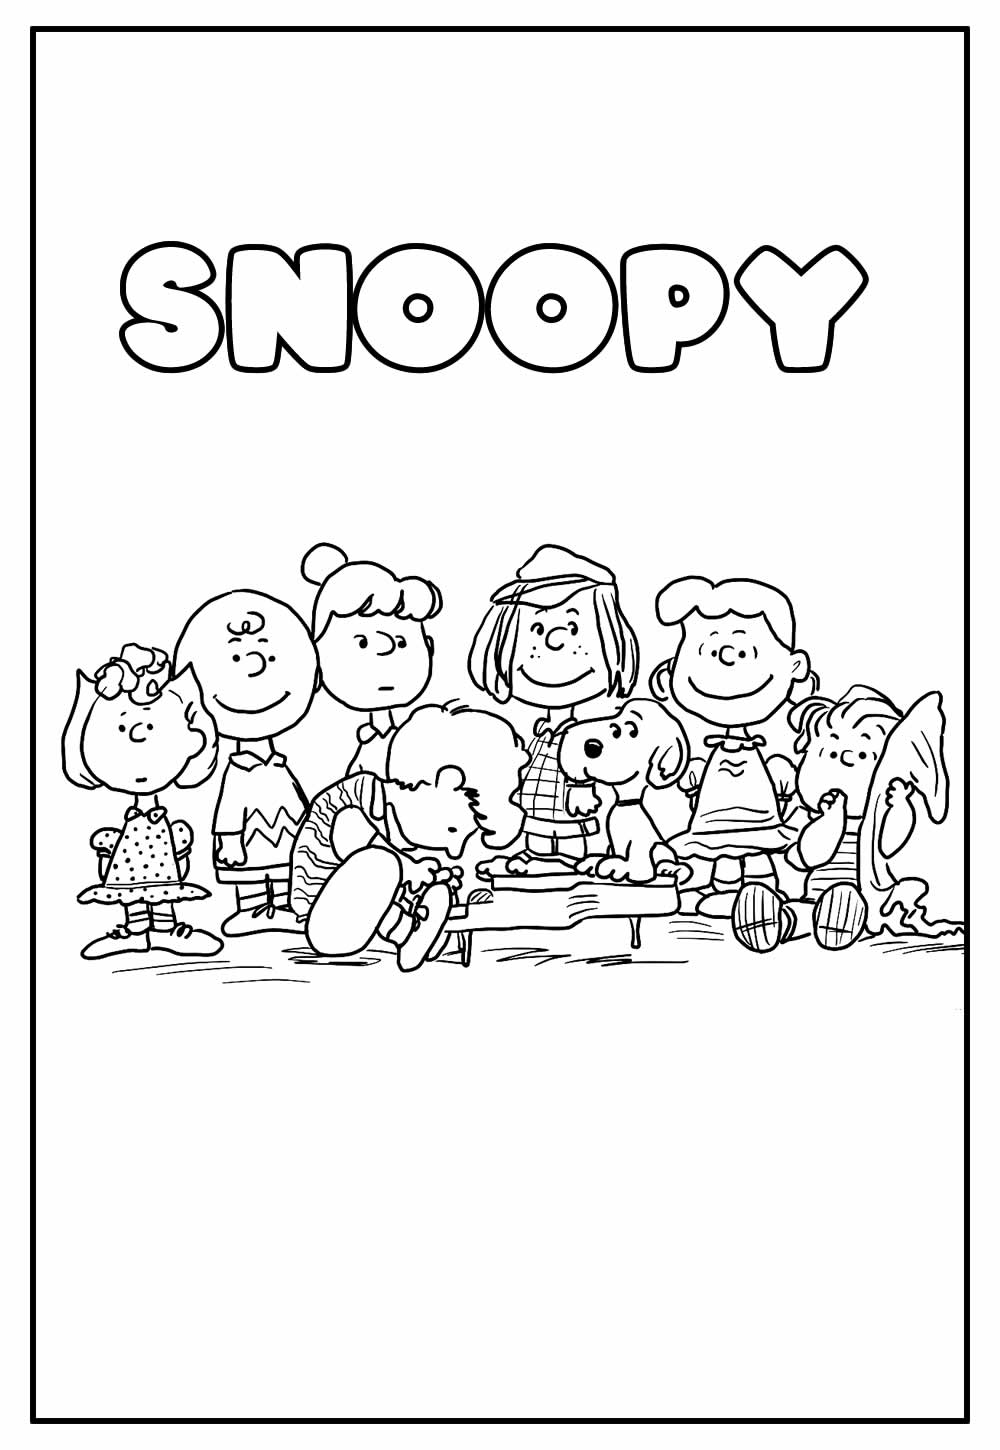 Desenho Educativo de Snoopy para colorir